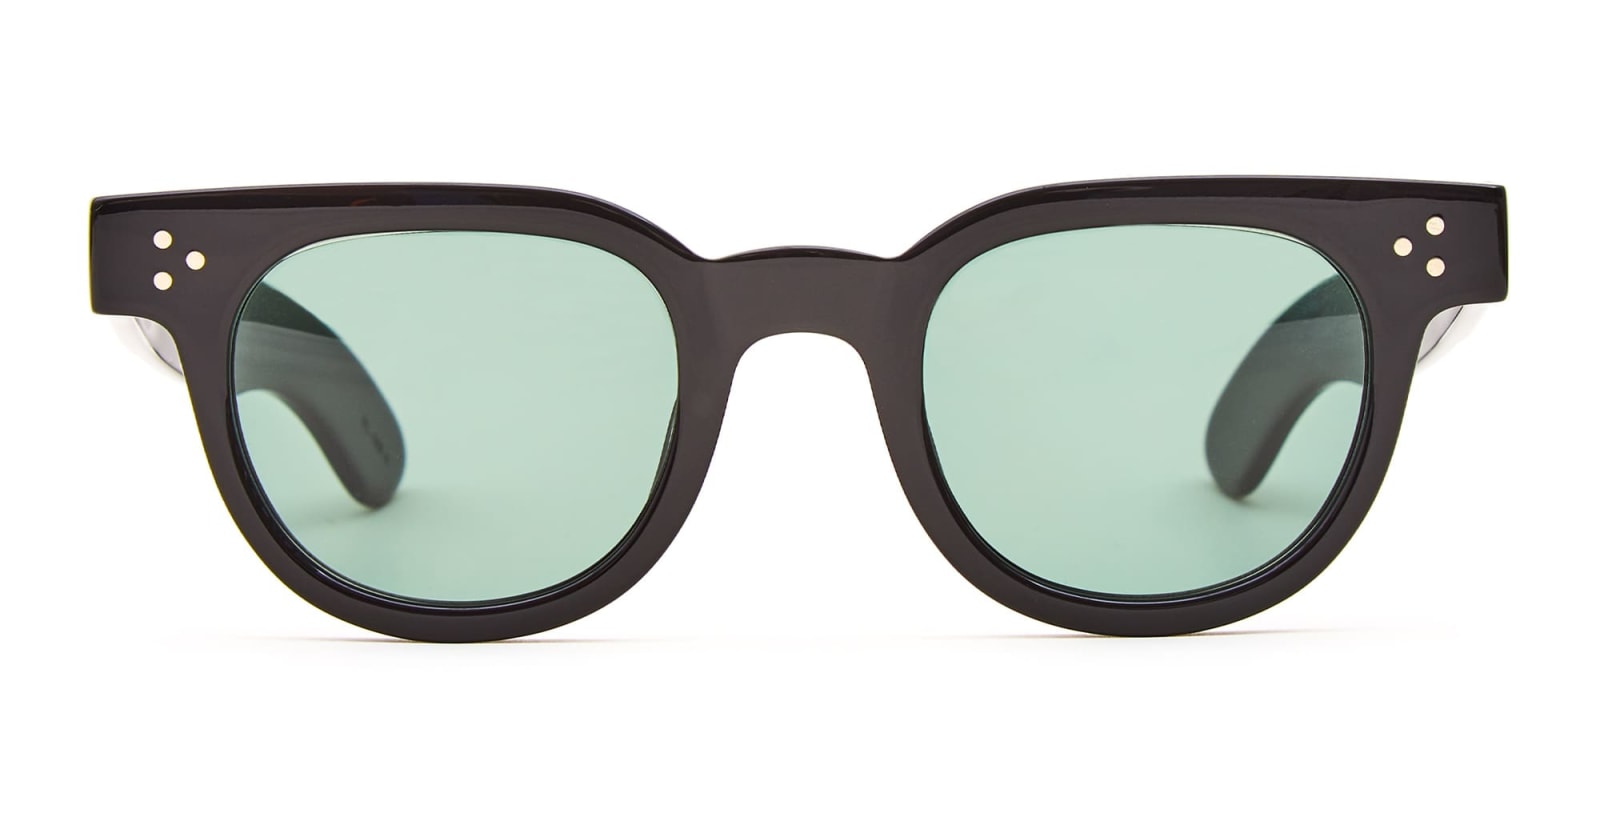 Julius Tart Optical Fdr 46x24 - Black / Green Lens Sunglasses